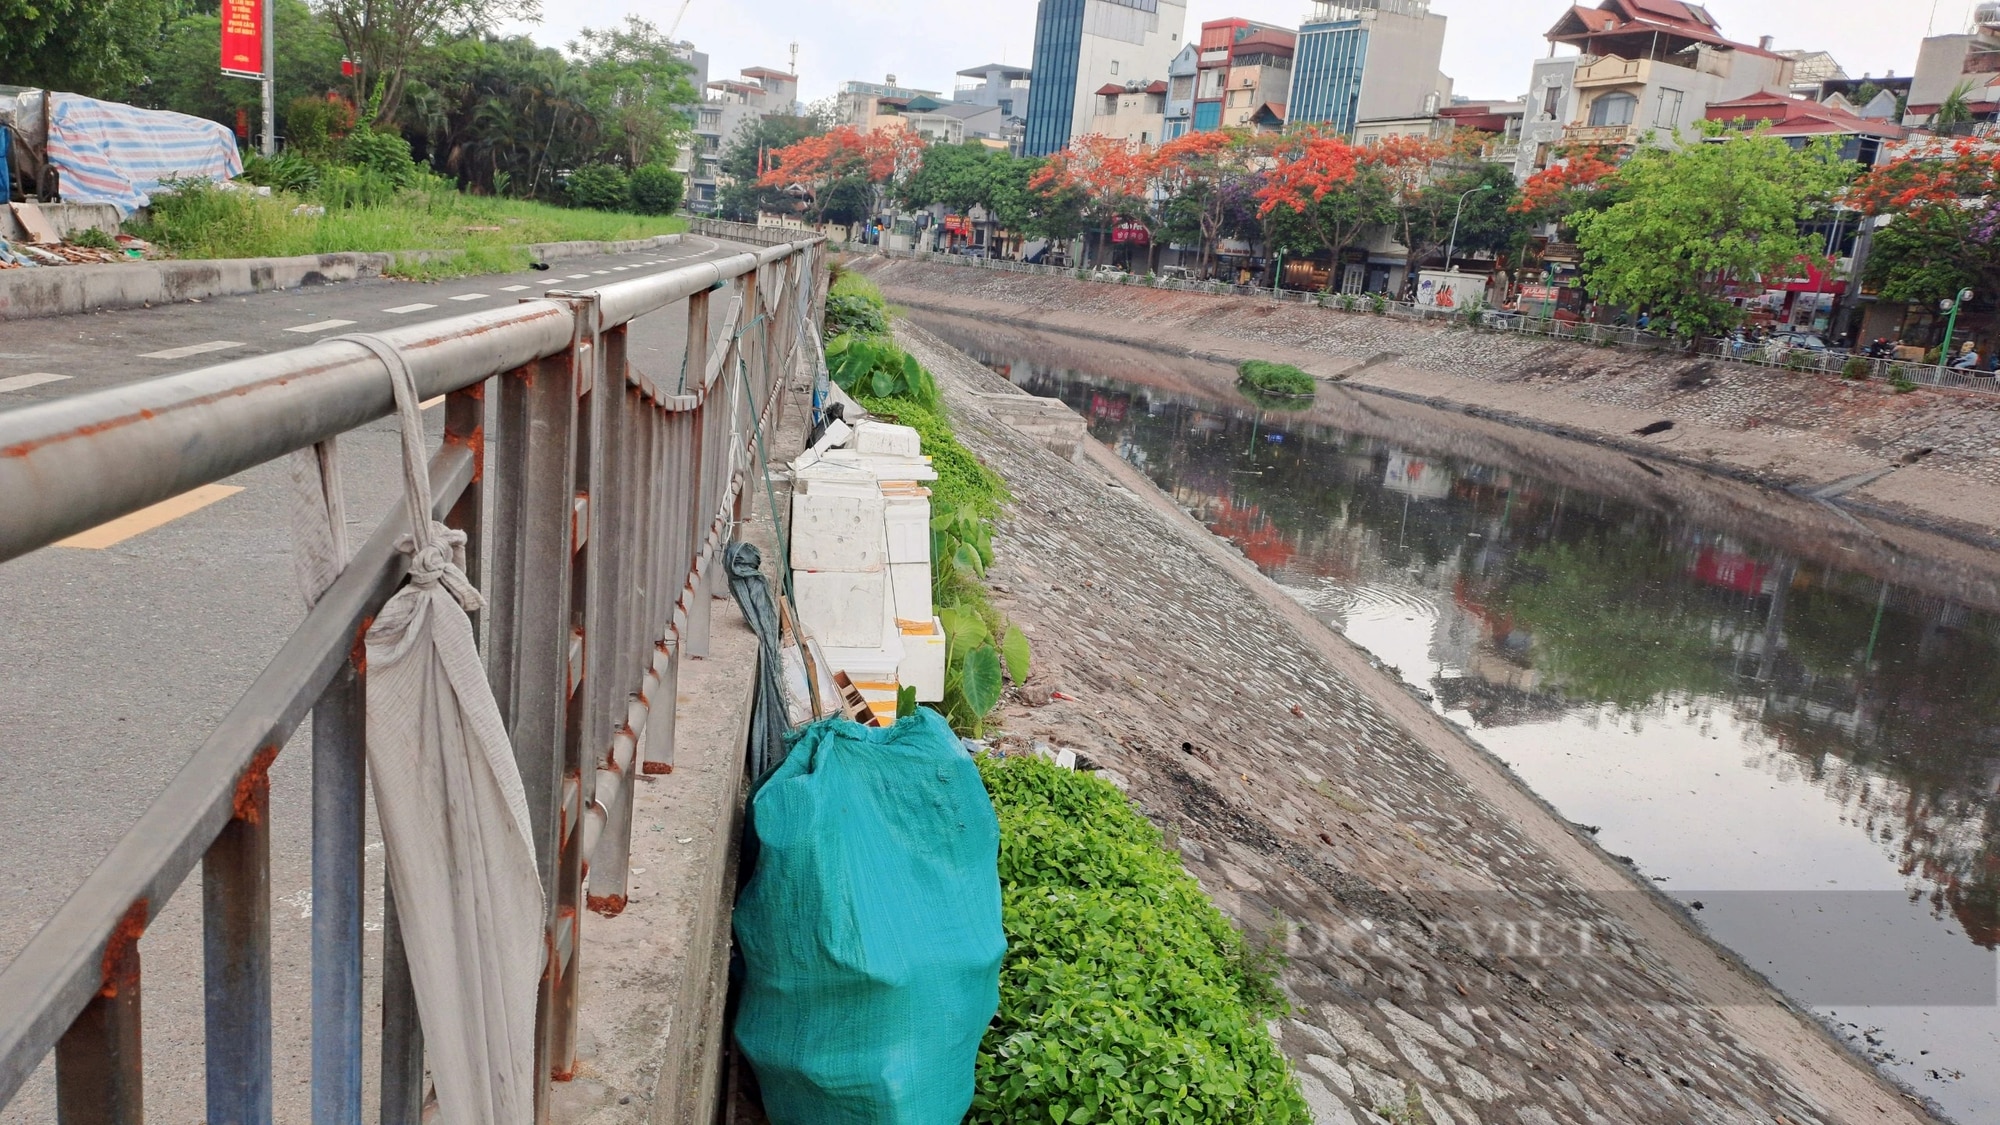 Muchas rutas de senderismo en Hanoi se han convertido en vertederos y aparcamientos - Foto 2.